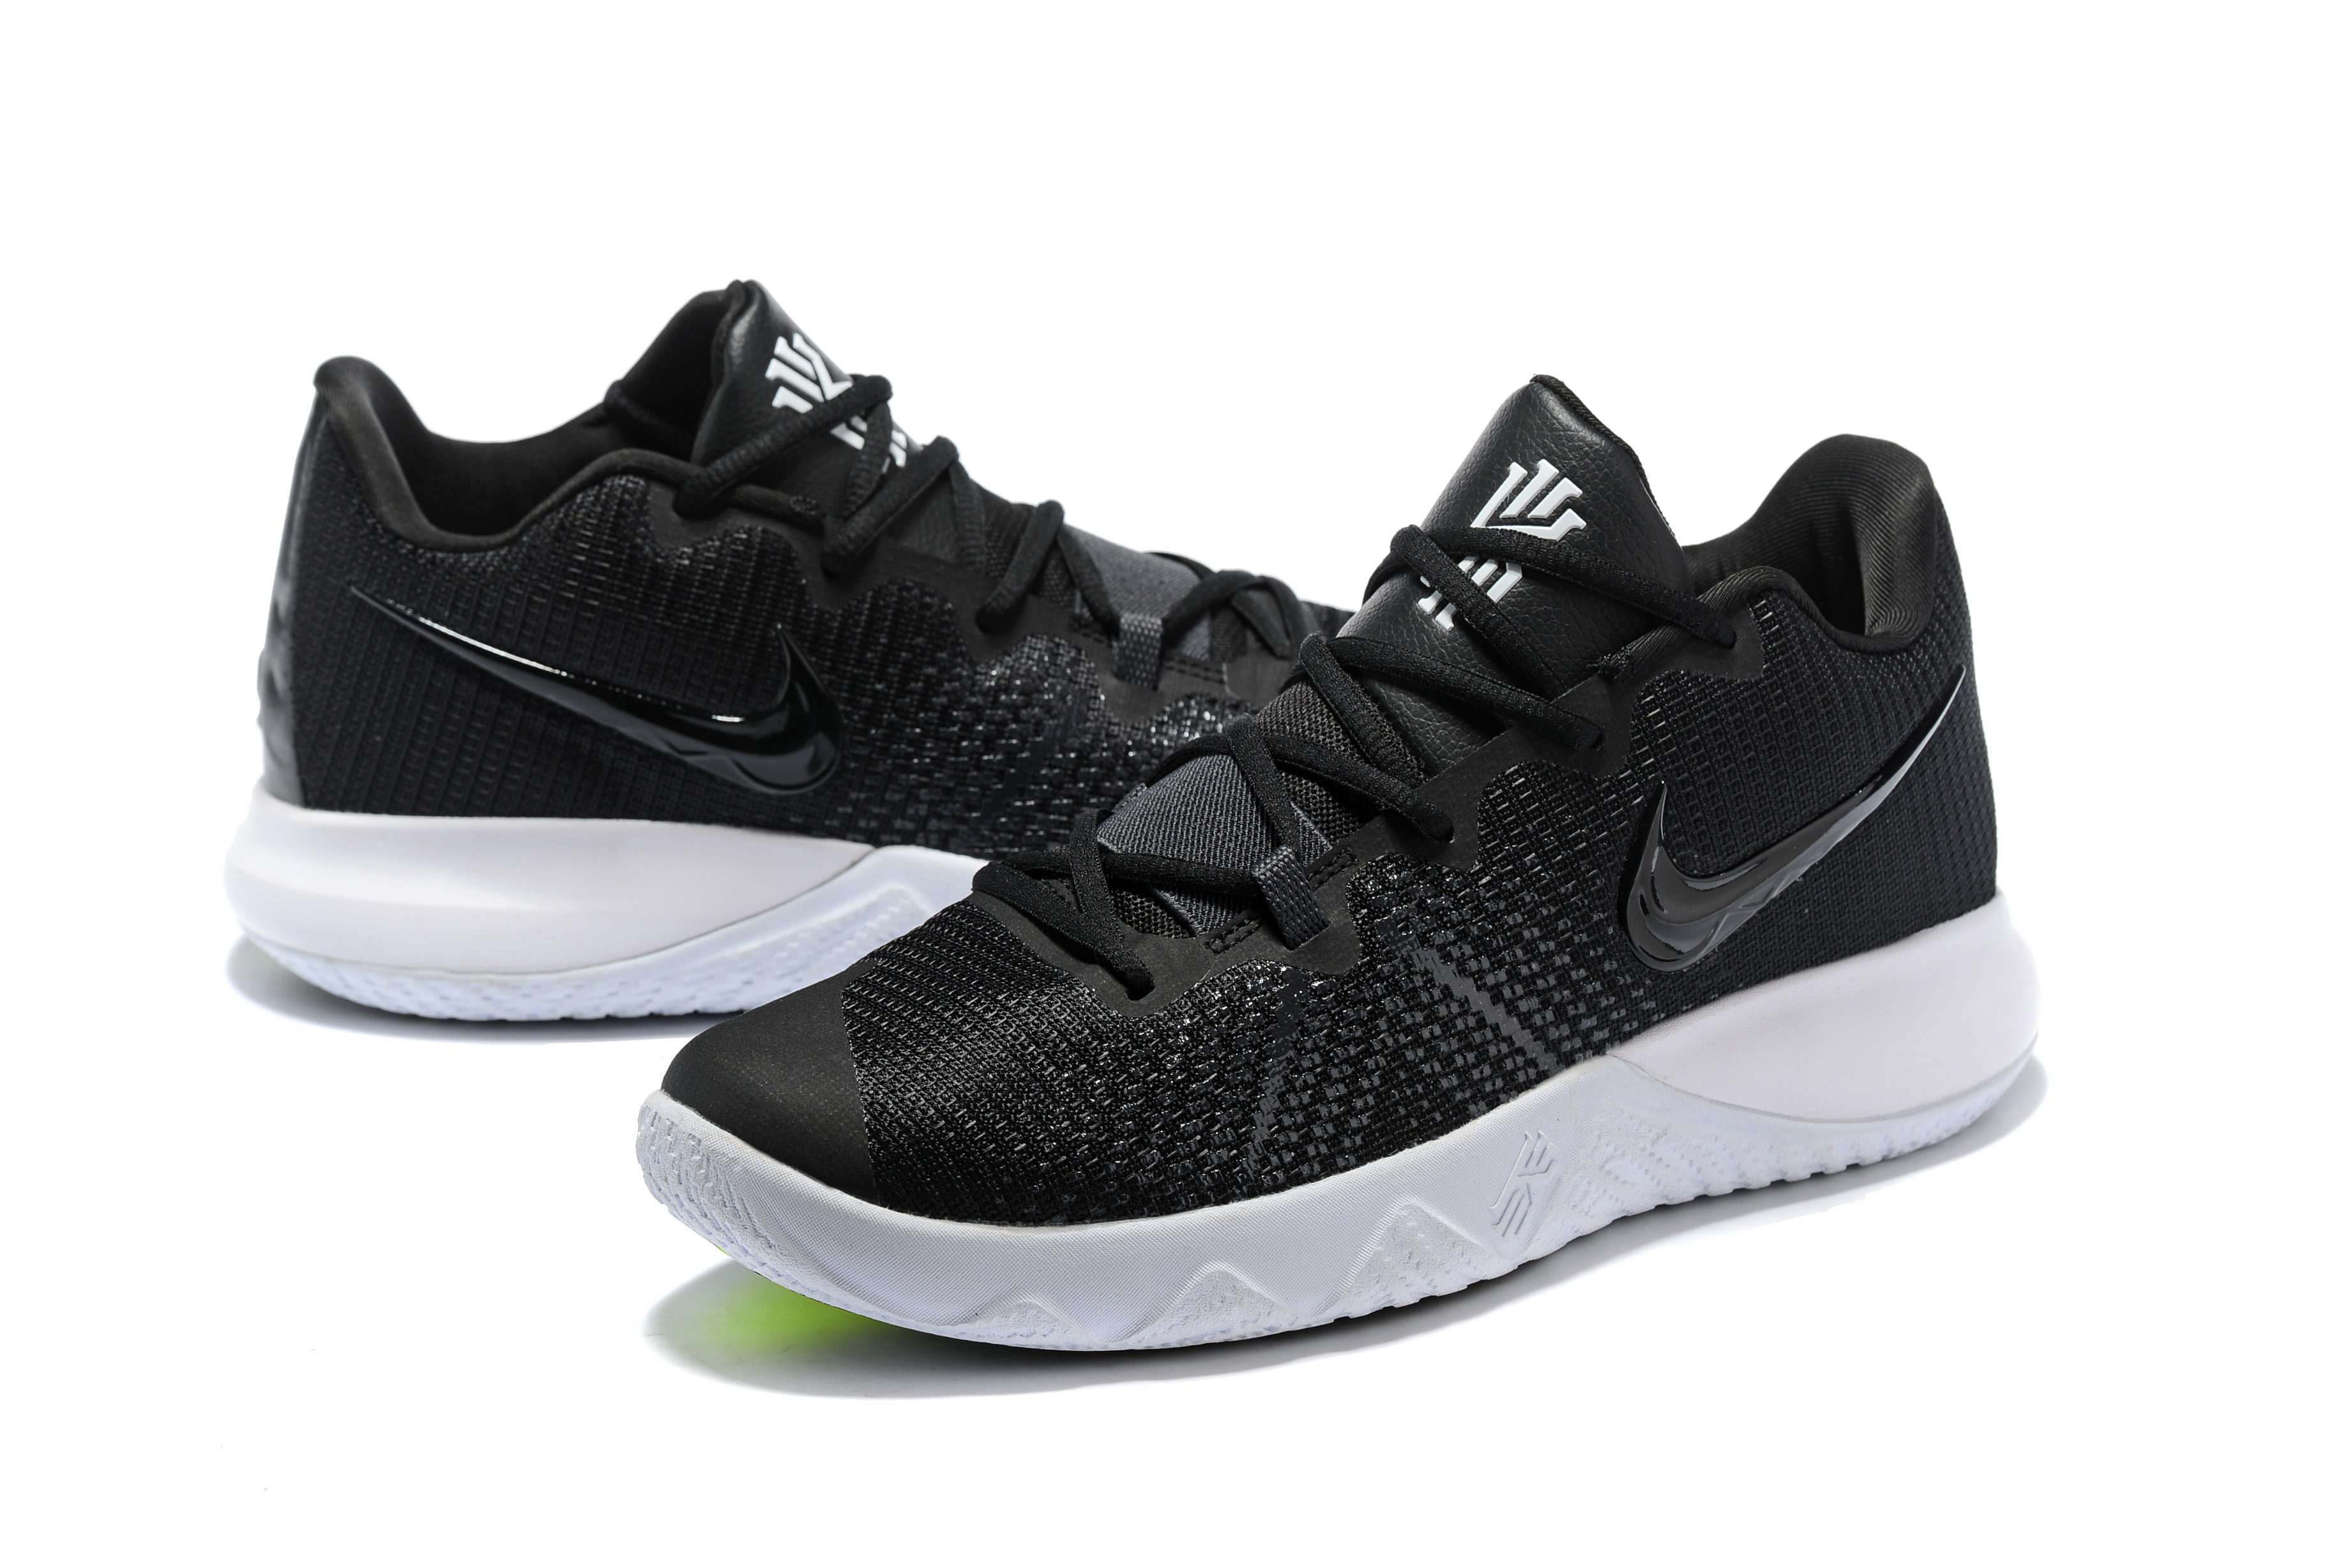 New Men Nike Kyrie Flytrap Black White Shoes